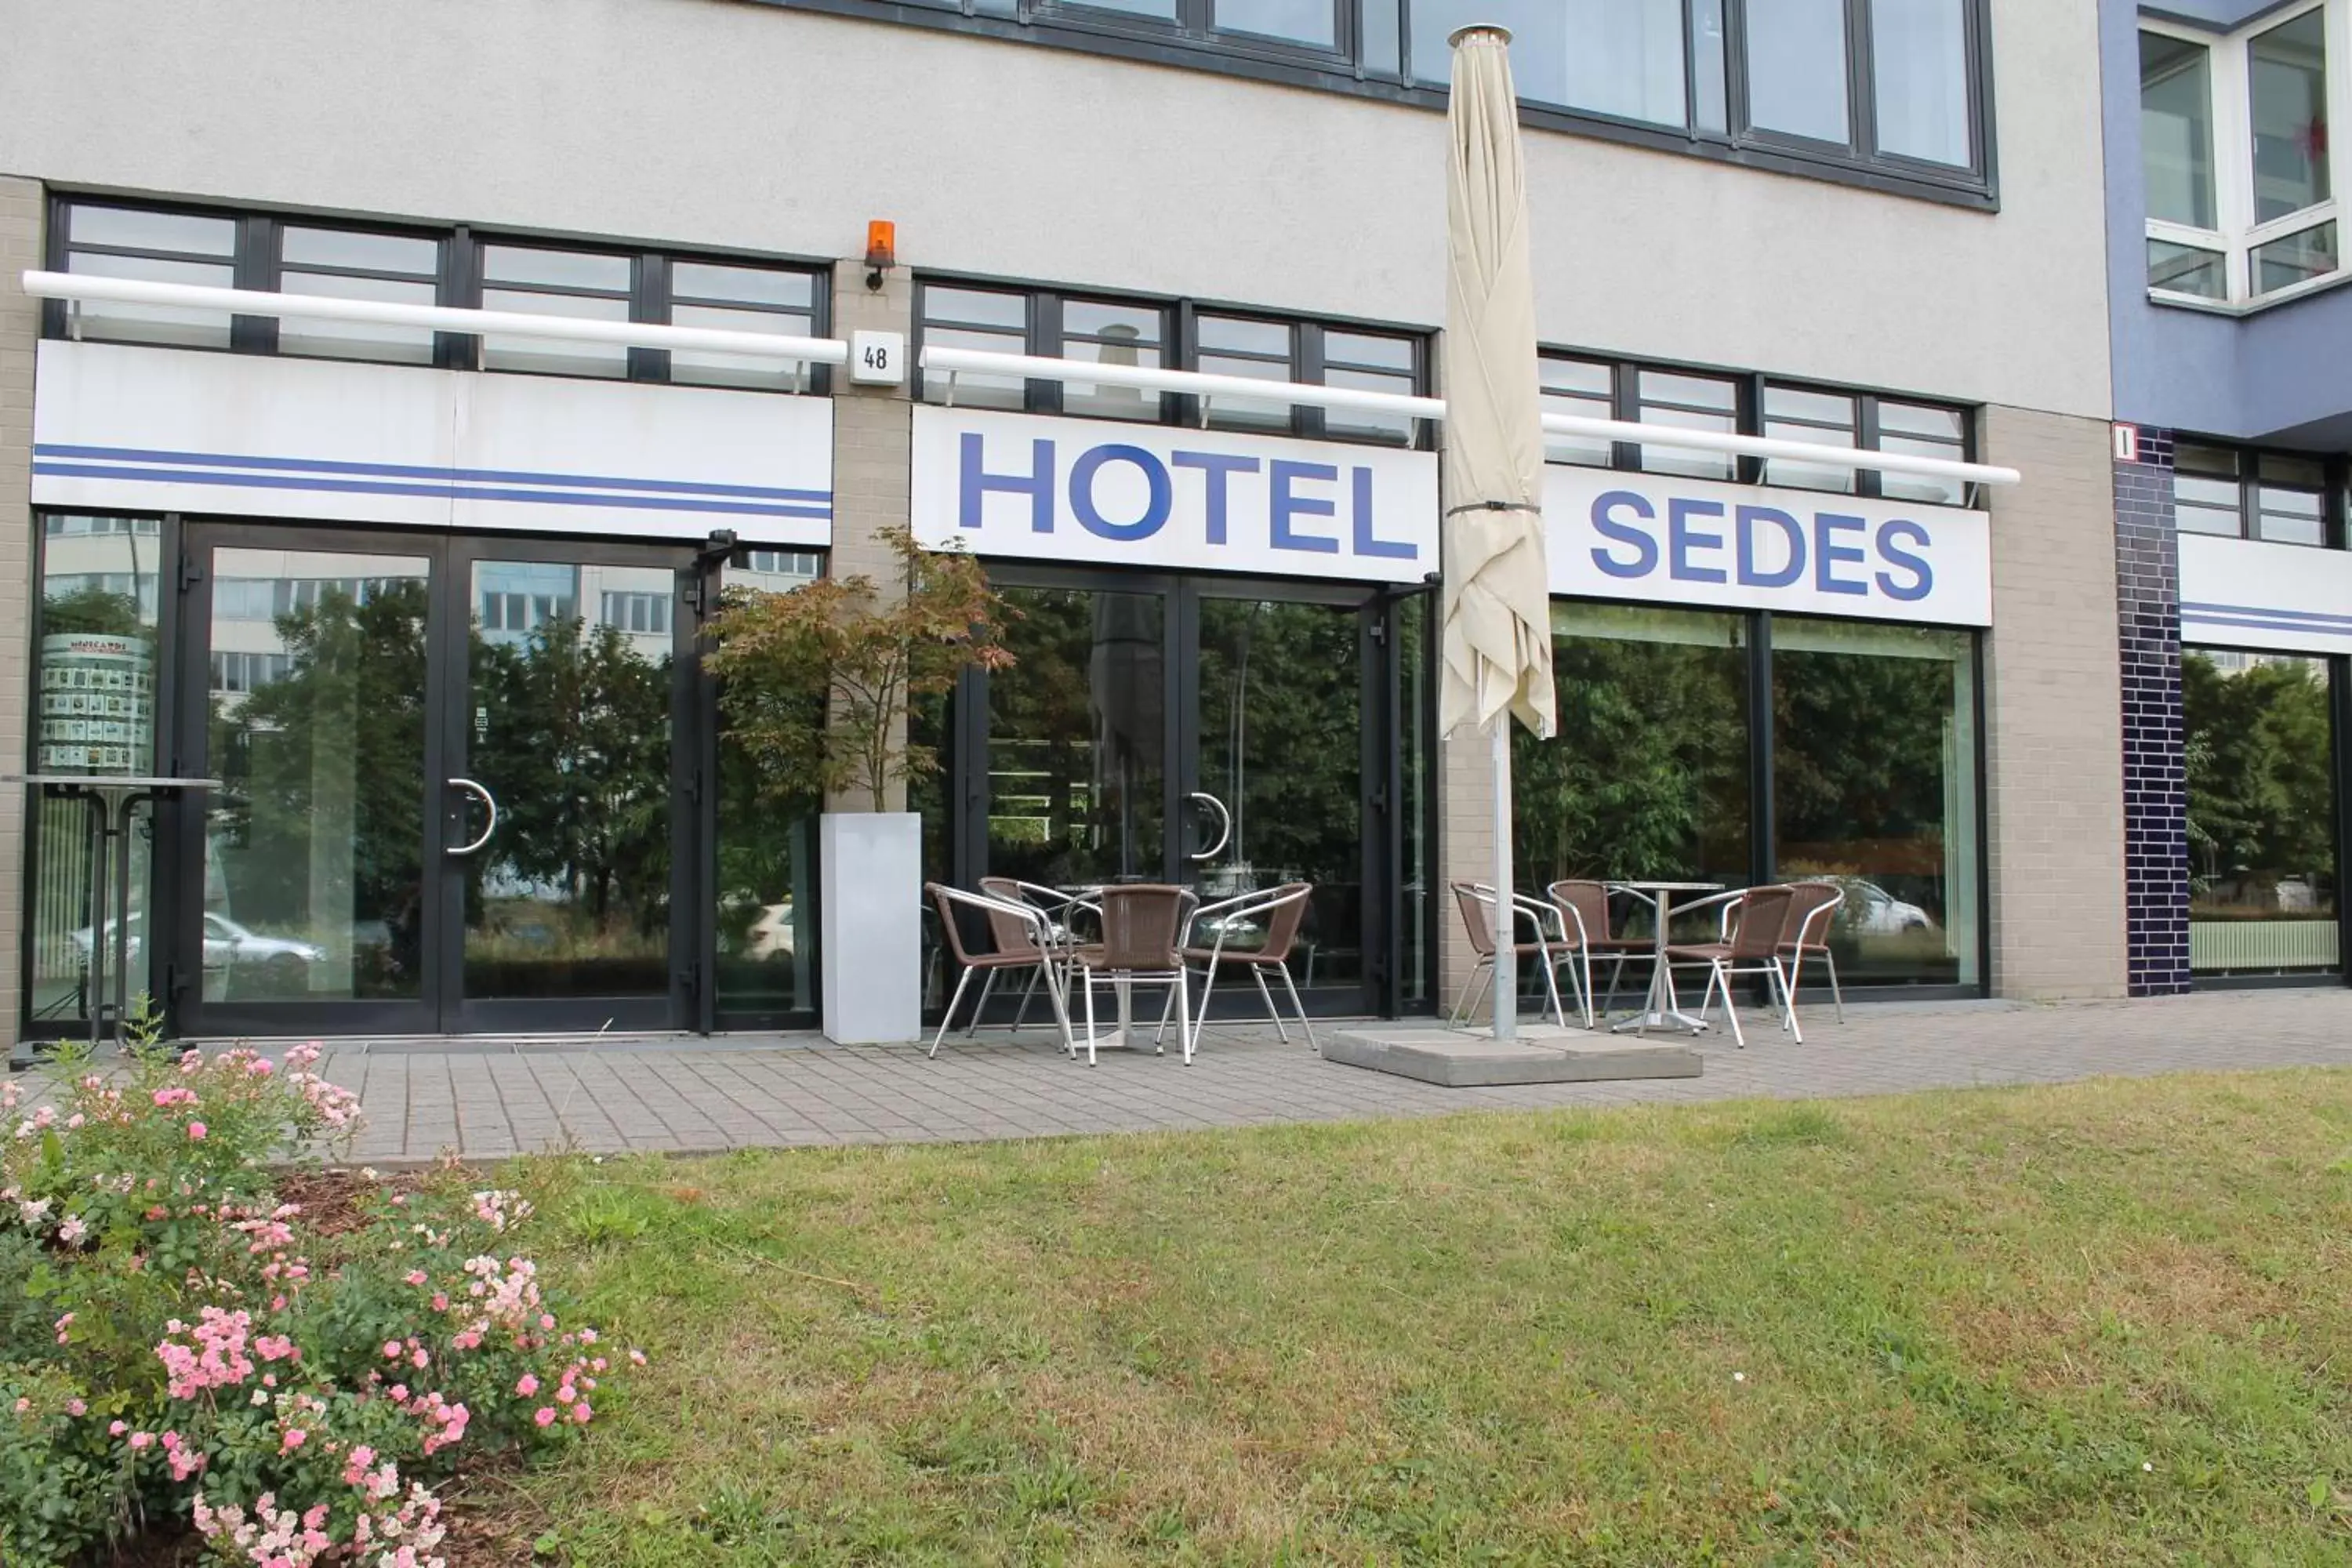 Facade/entrance in Hotel Sedes